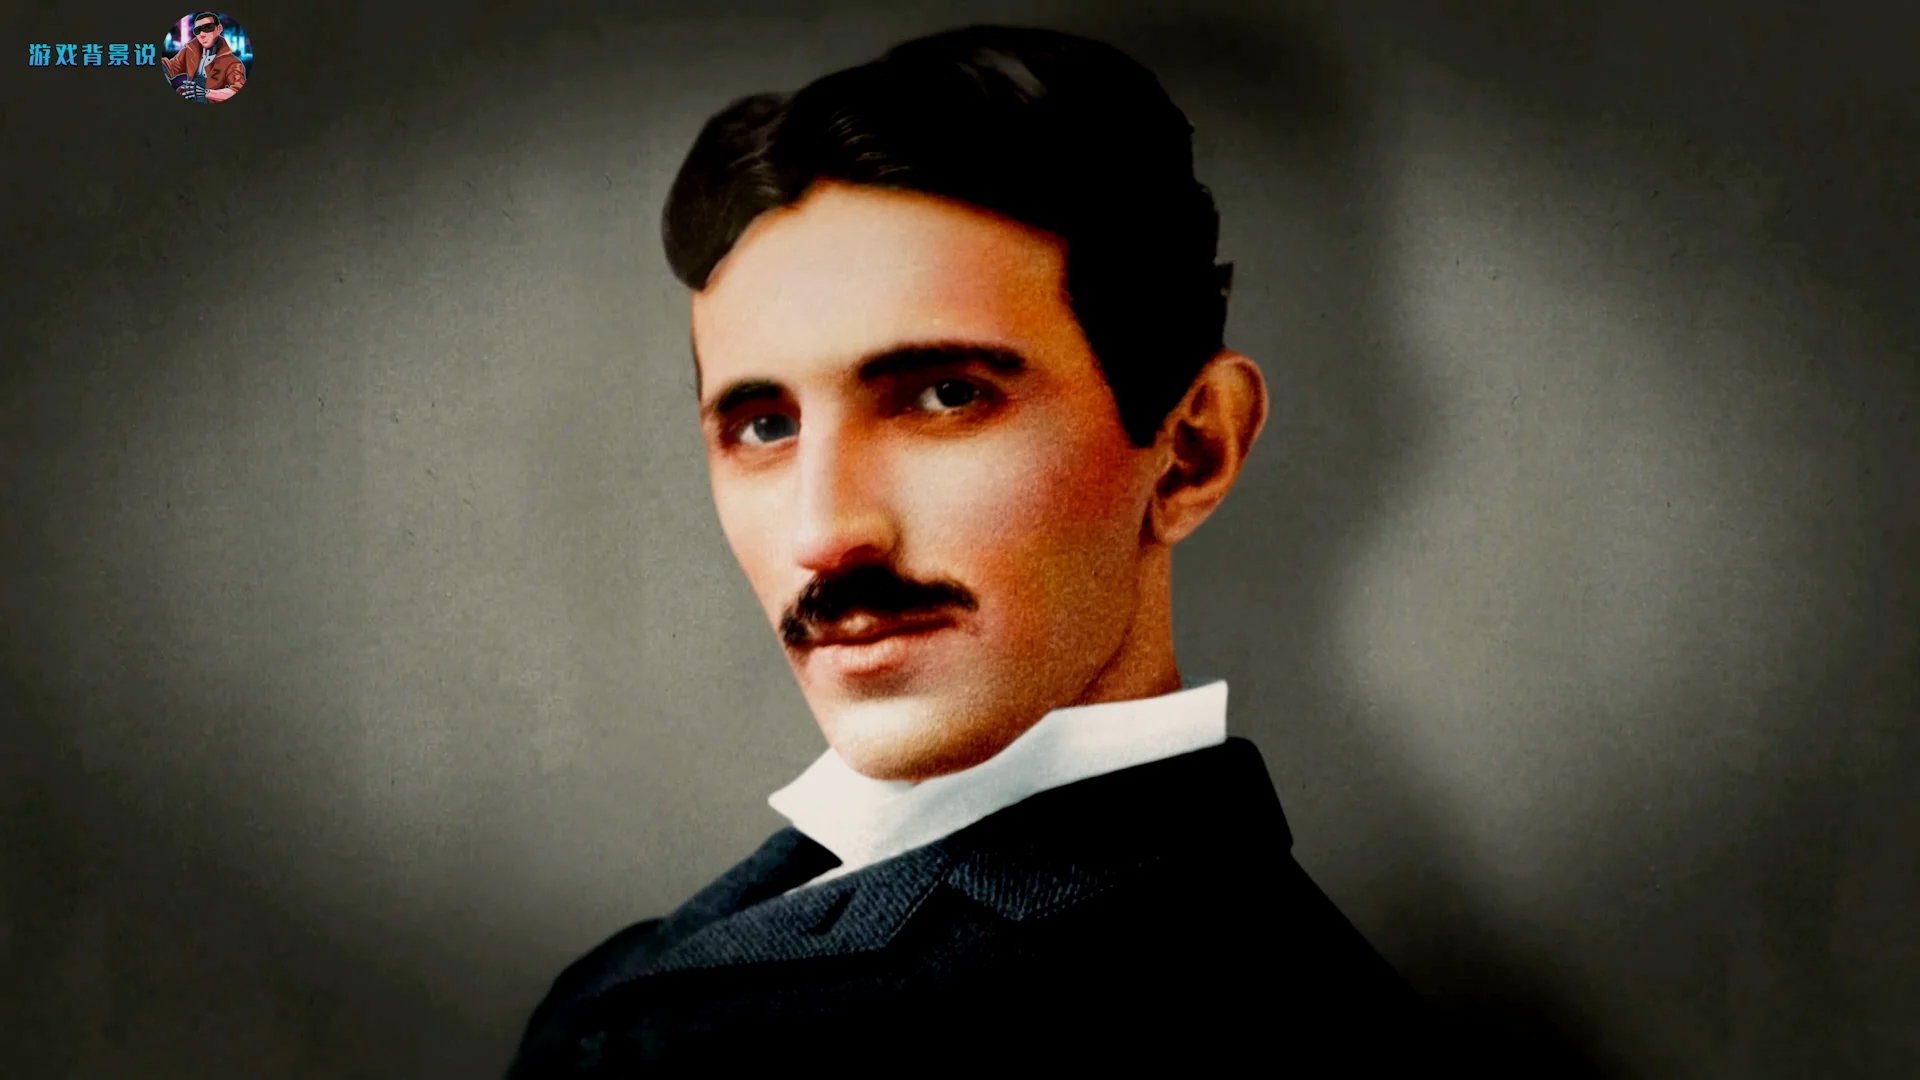 尼古拉·特斯拉本尊，1856-1943，塞尔维亚裔科学家、发明家